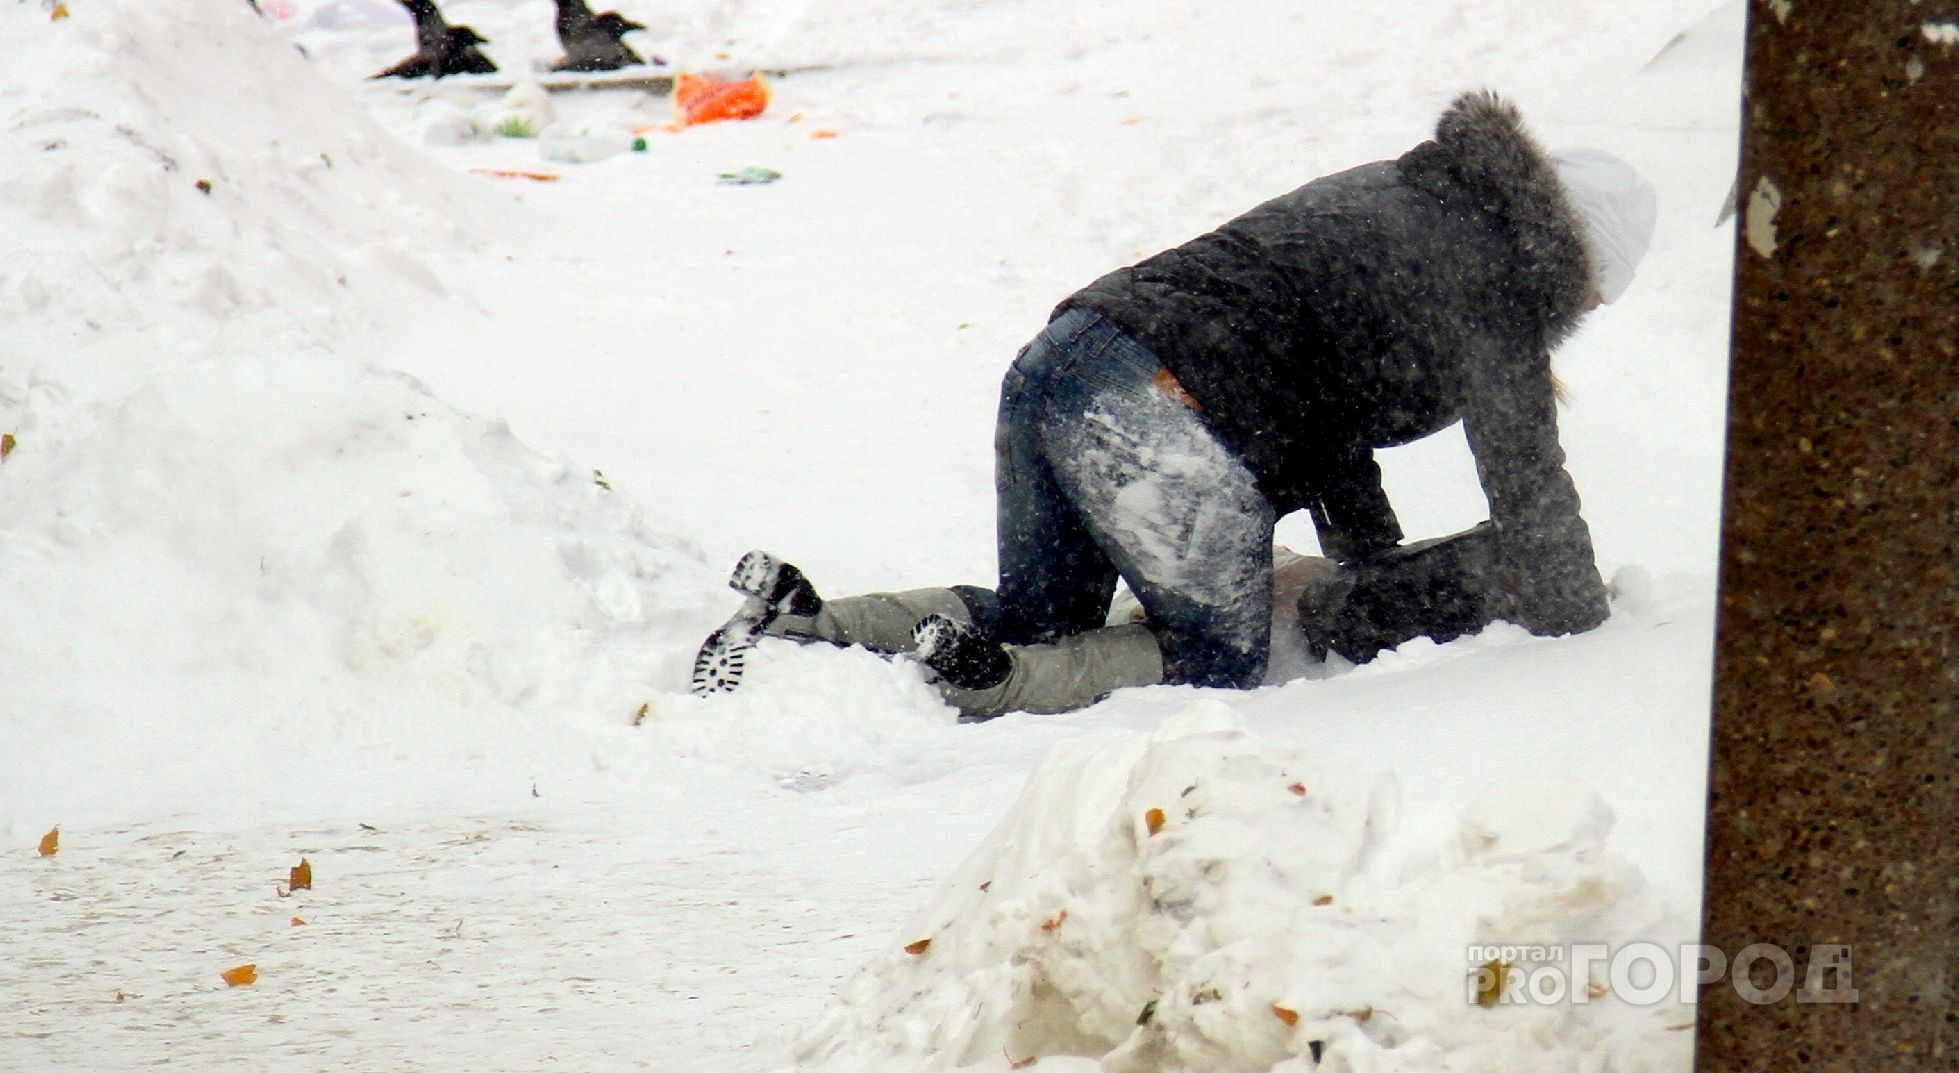 Следователи проводят доследственные проверки после падения снега на людей